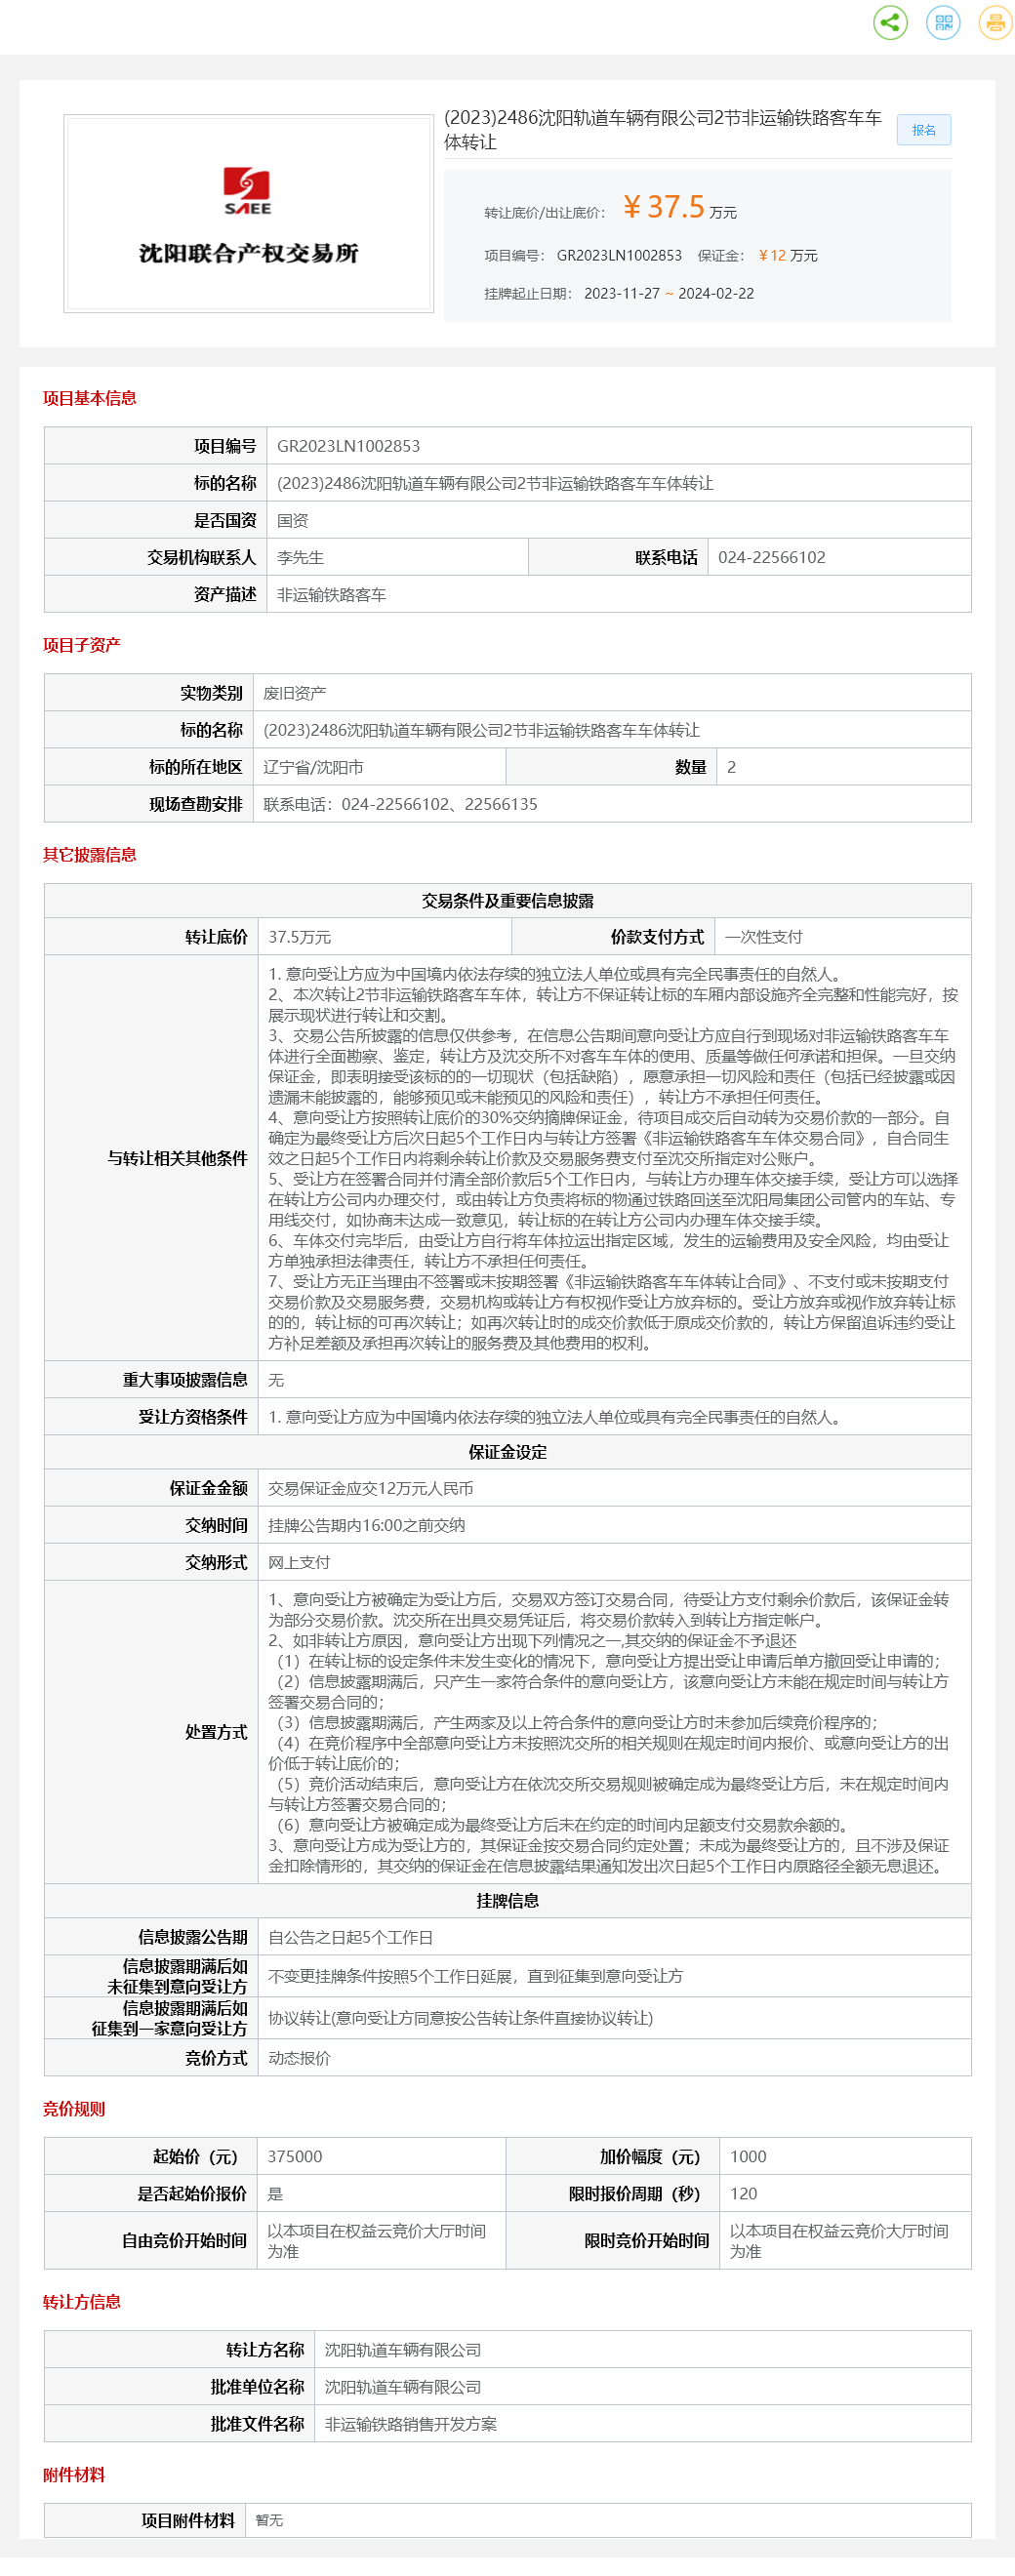 2月22日沈阳轨道车辆公司2节非运输铁路客车车体转让公告